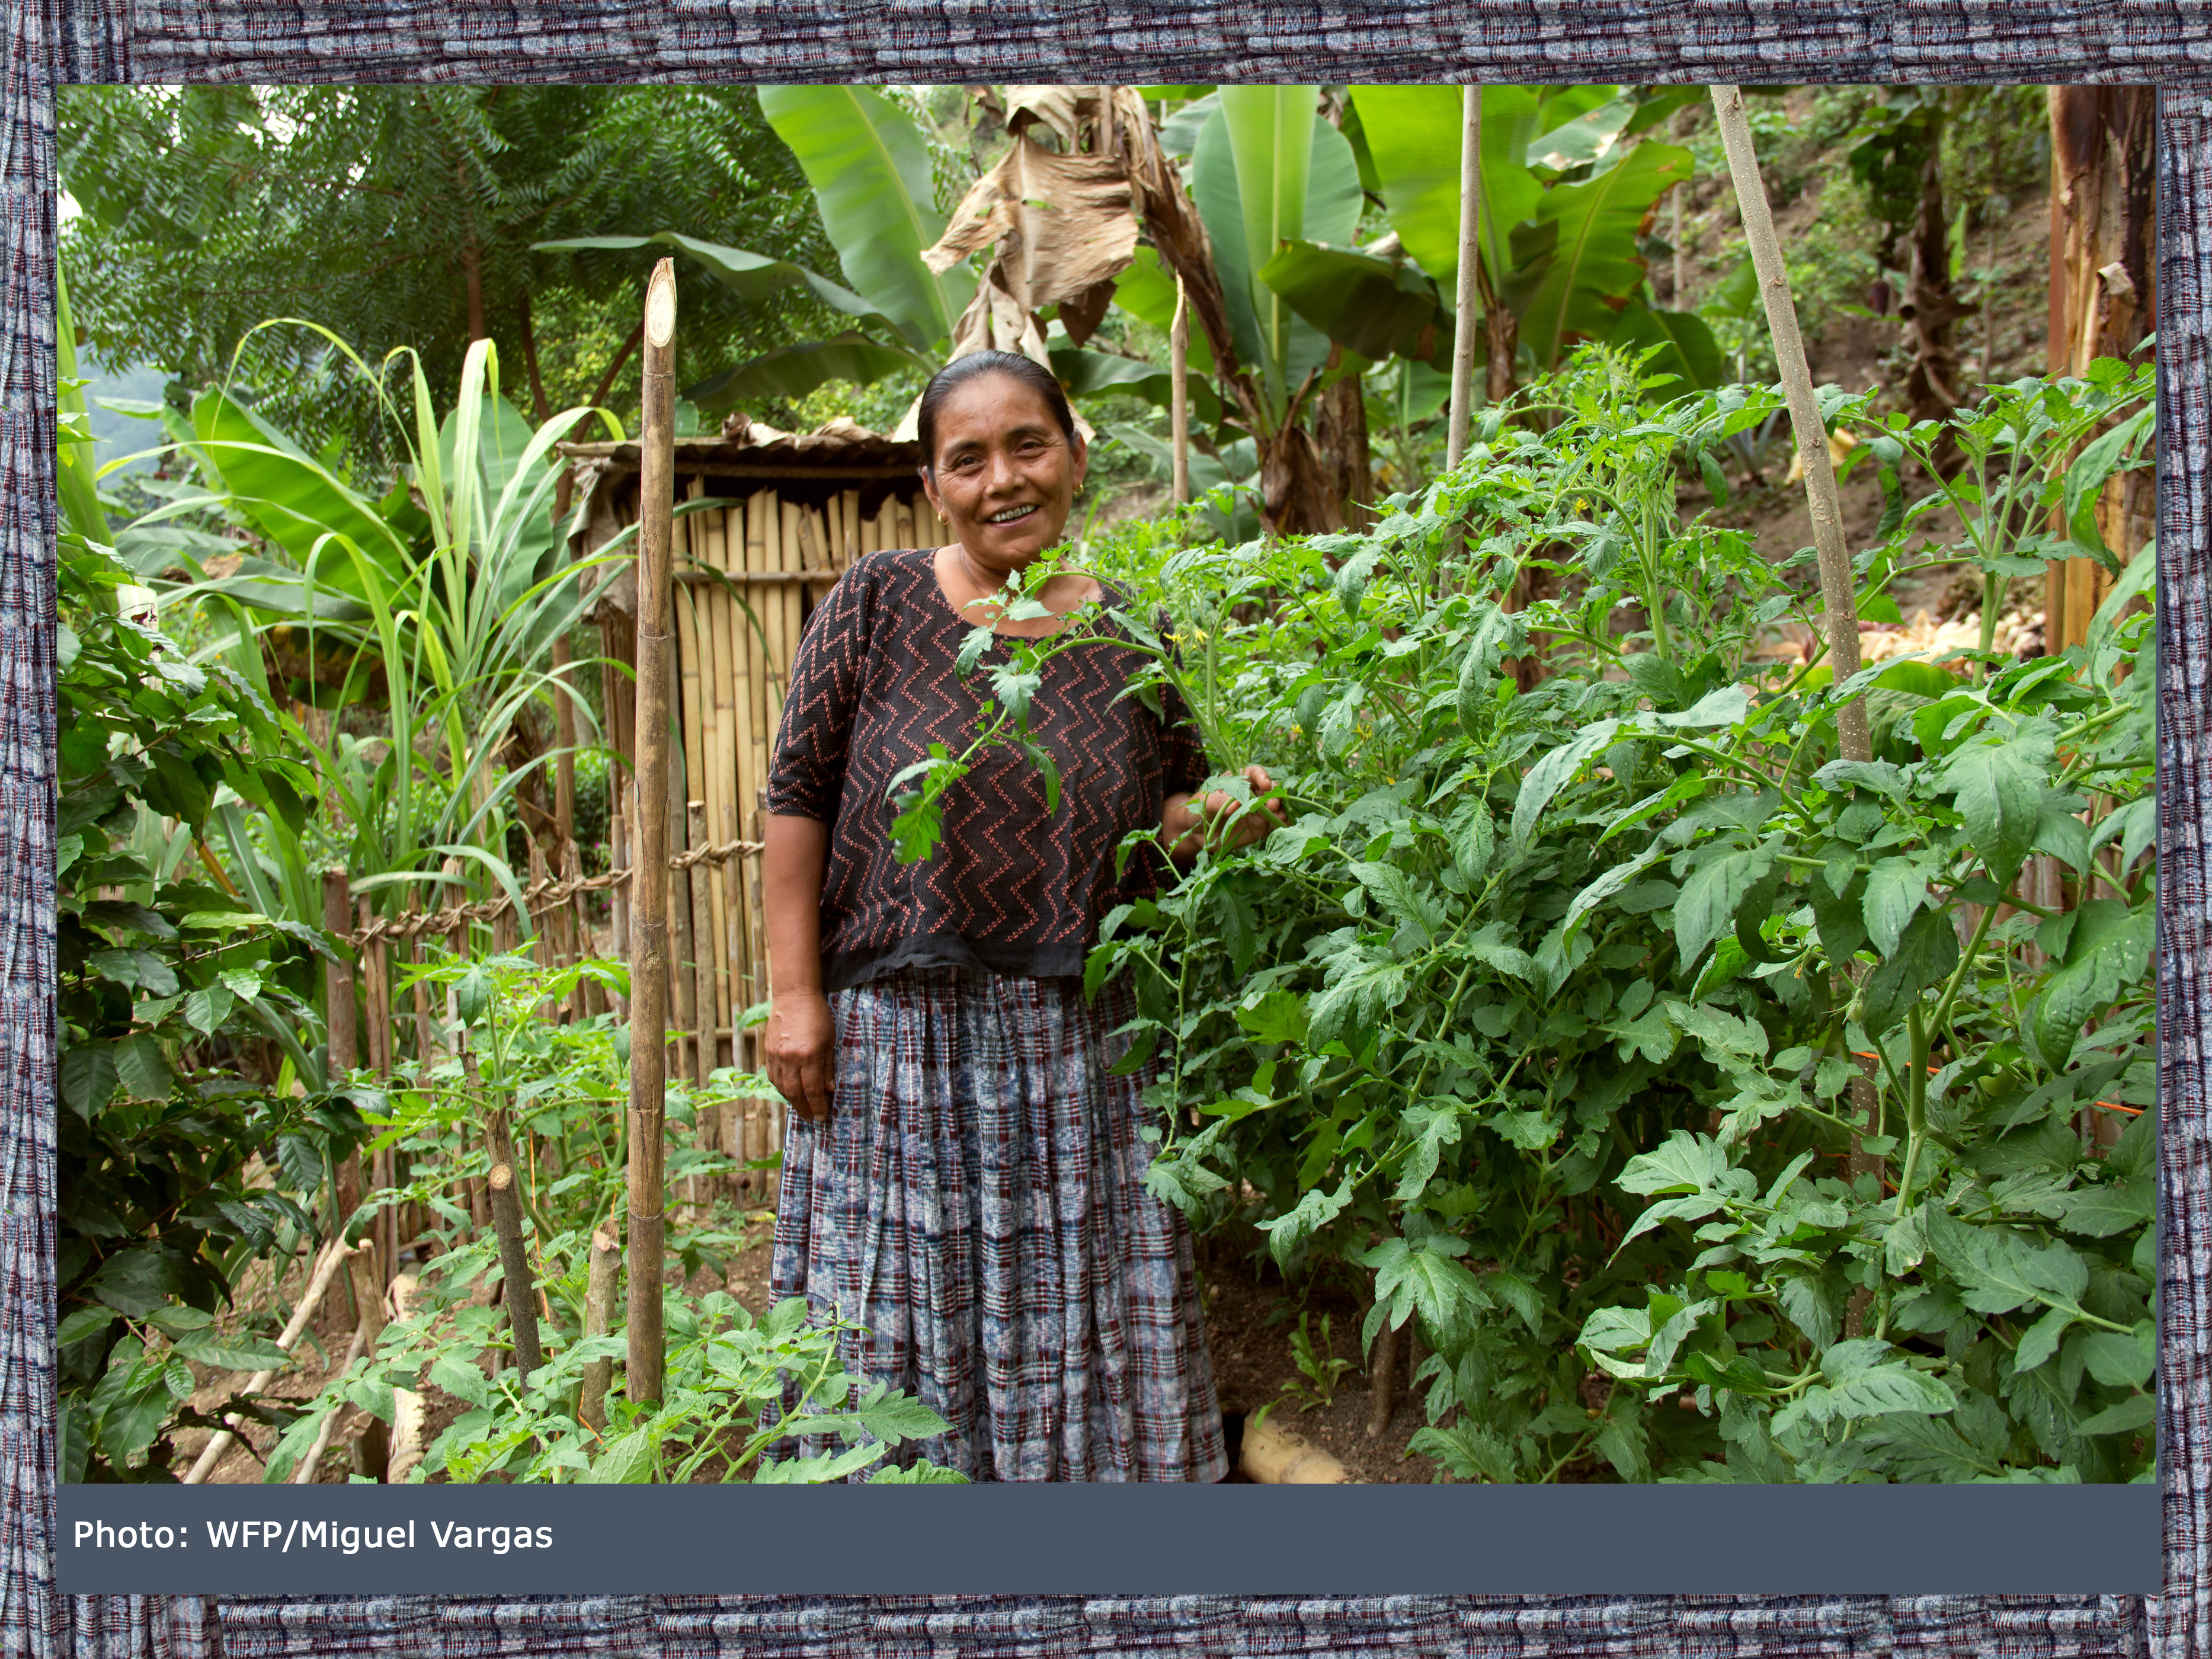 Maria Quej San de Moran, smiles watching her garden grow in her village in Guatemala. 